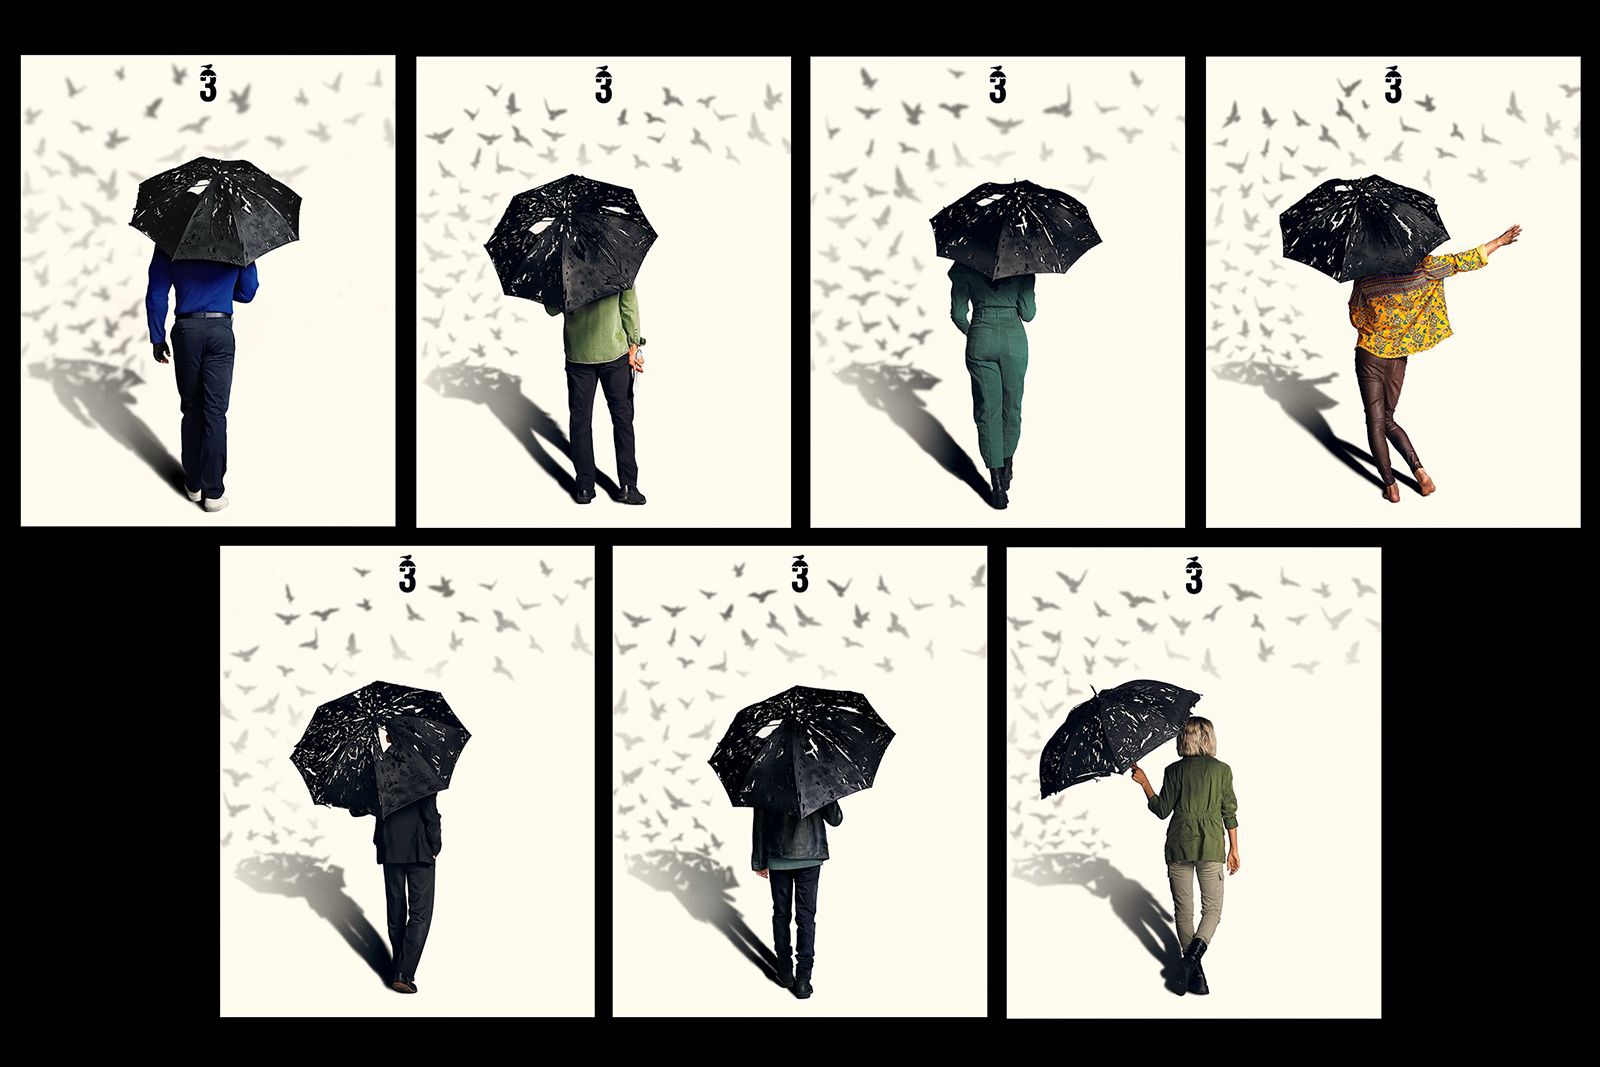 Umbrella Academy season 3 photo 3